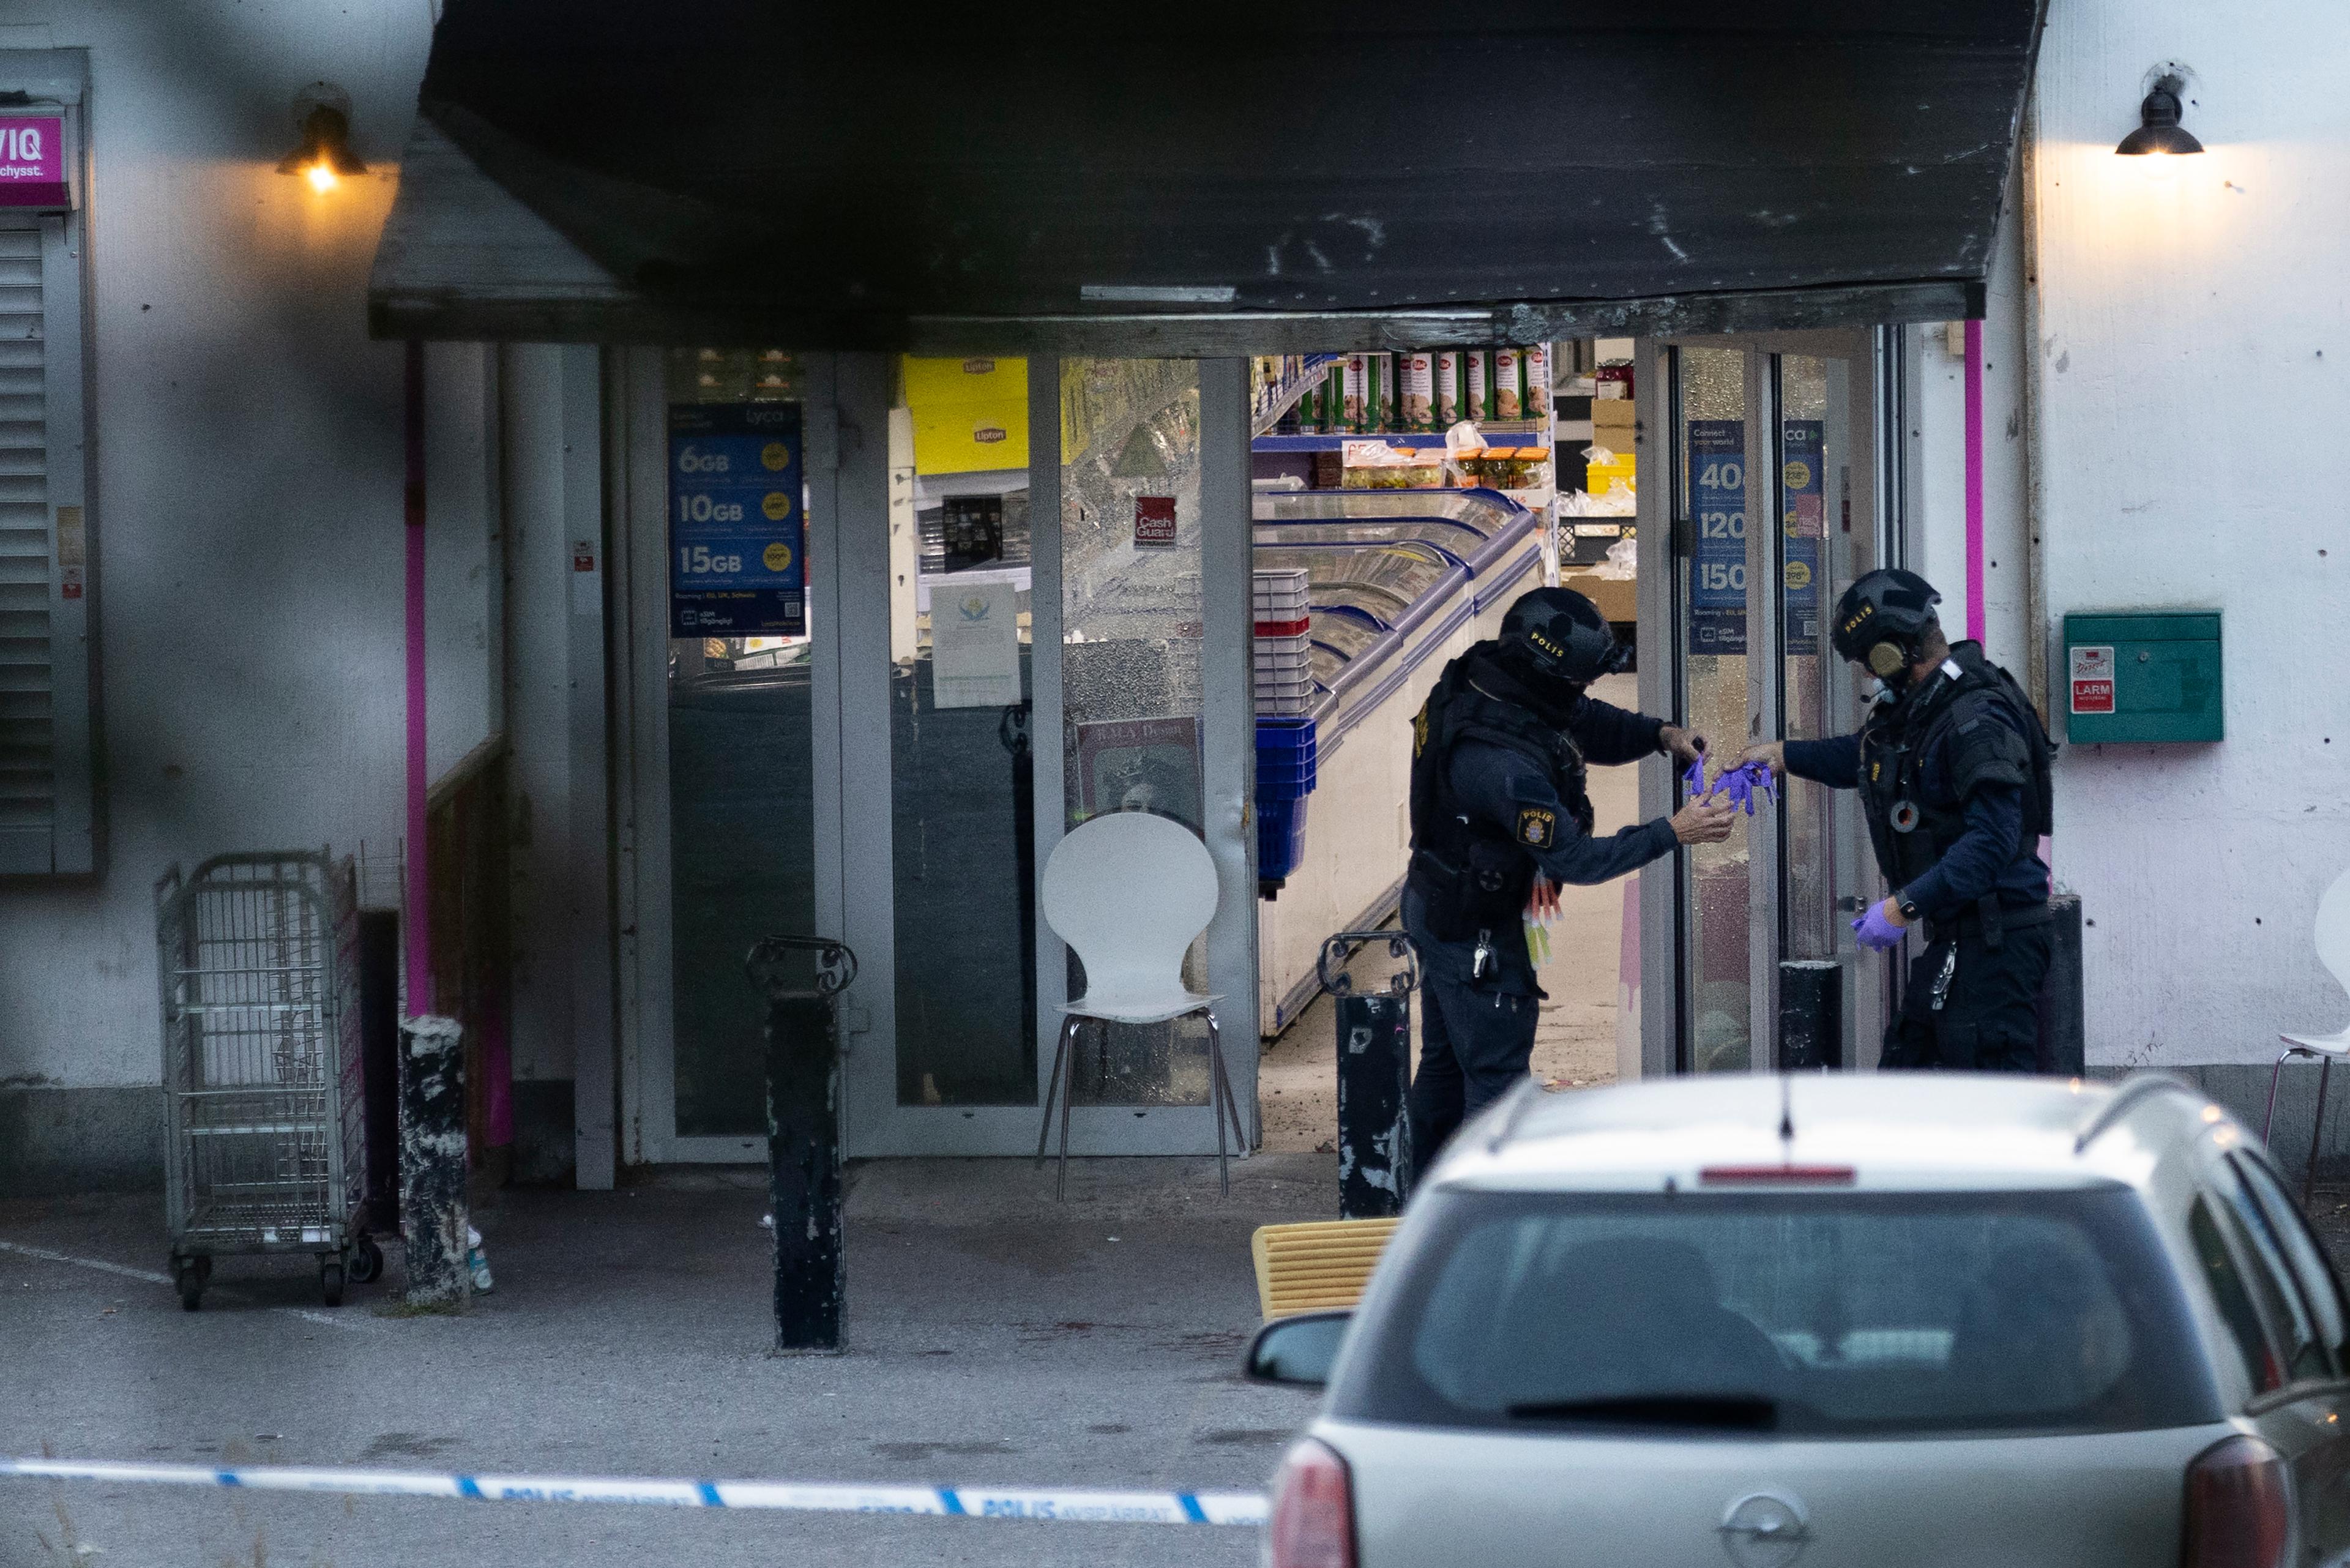 Polis på plats efter en explosion i en butik i Geneta i Södertälje på måndagskvällen. Foto: Mickan Mörk/TT